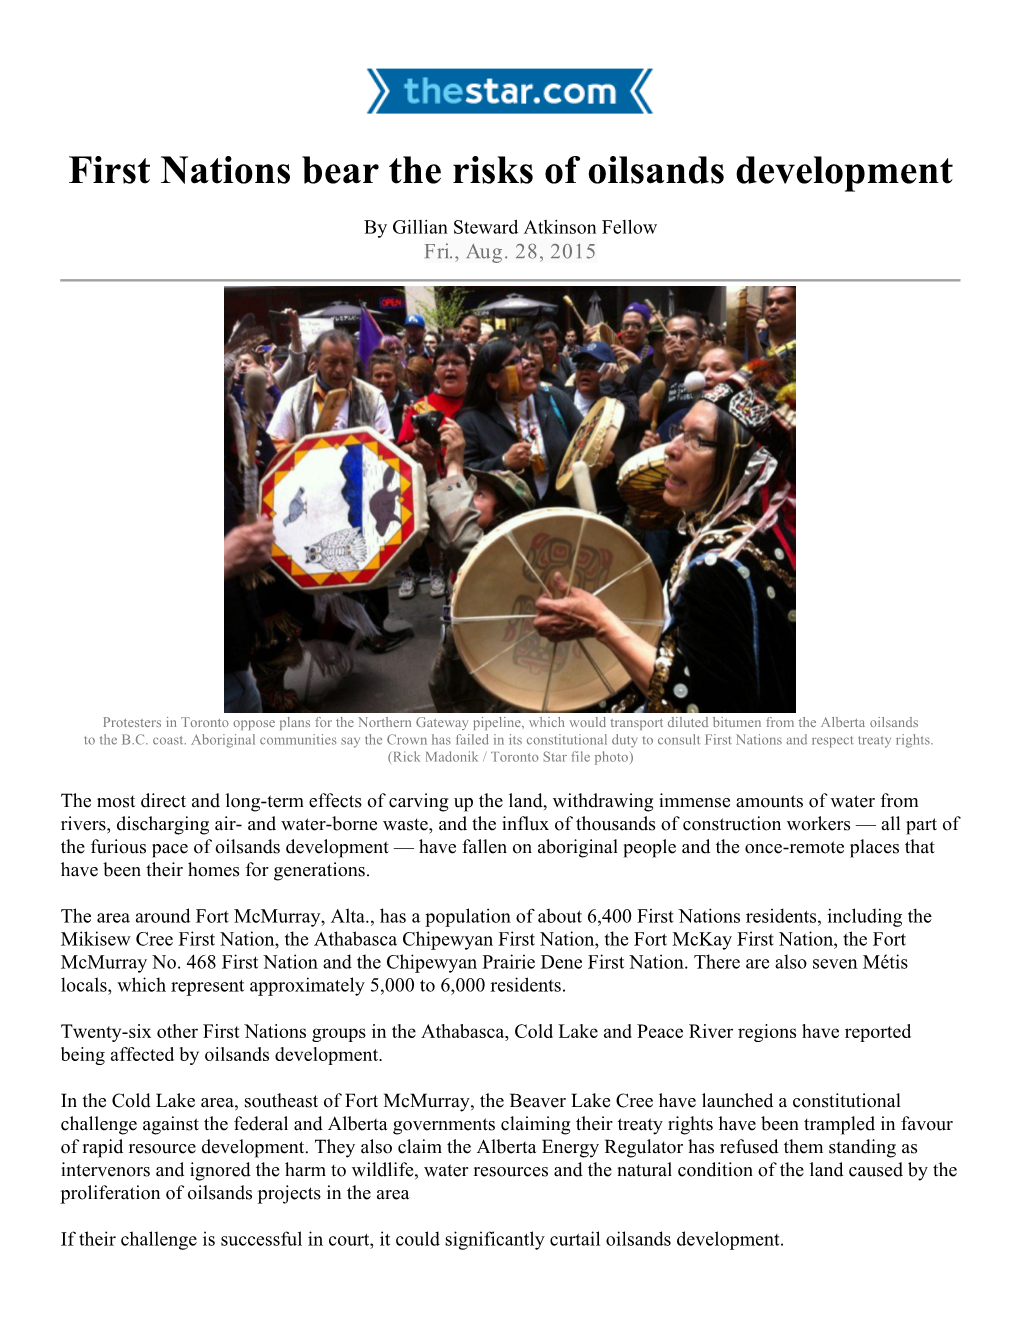 First Nations Bear the Risks of Oilsands Development